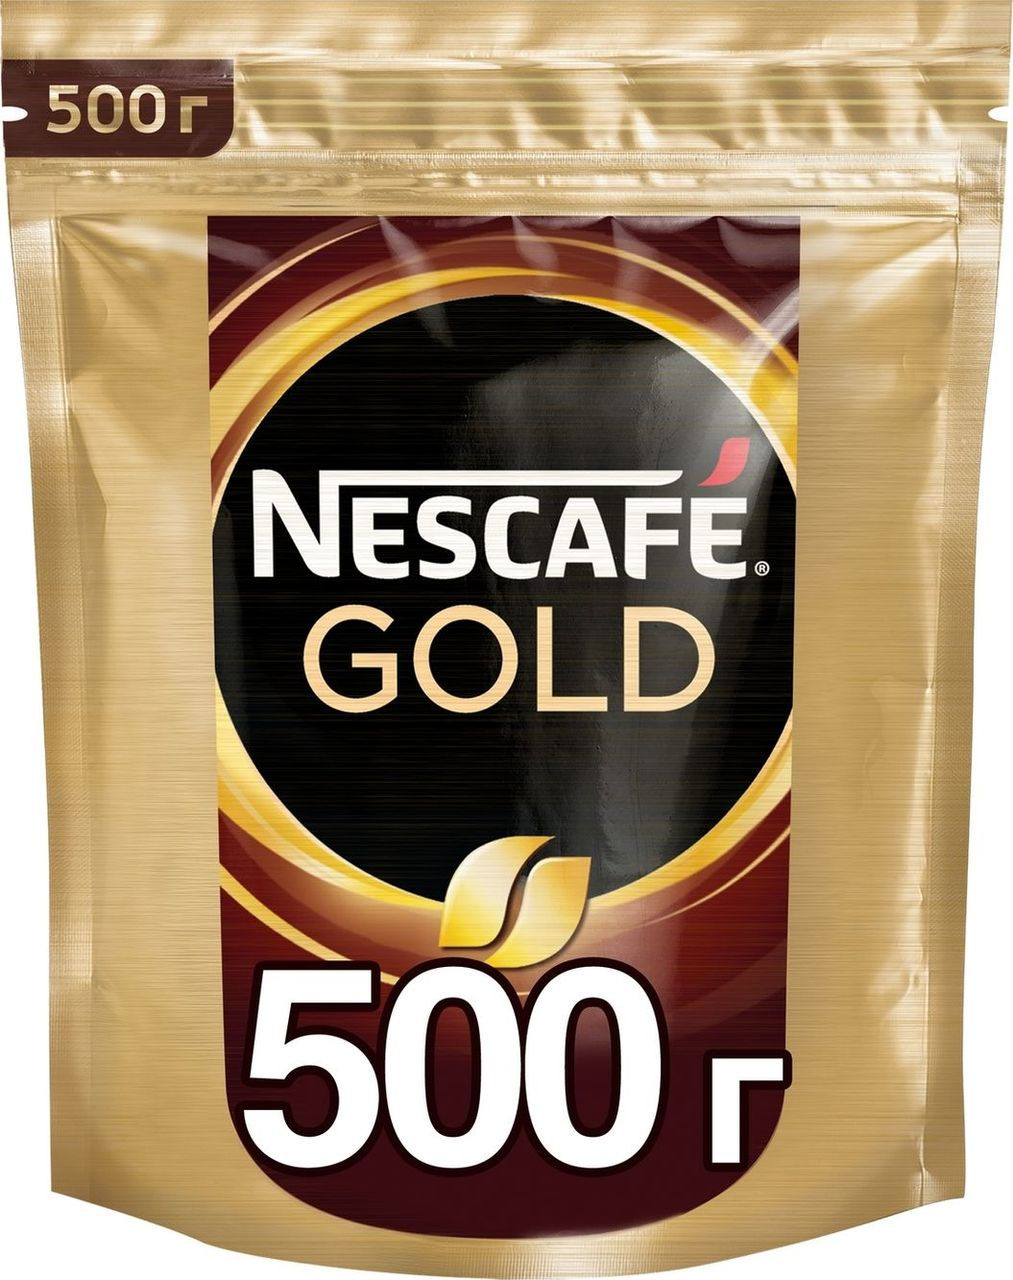 Кофе нескафе голд 500 купить. Кофе Нескафе Голд 500г м/у. Нескафе Голд в мягкой упаковке 500 грамм. Нескафе Голд 500 гр. м/у. Кофе Nescafe Gold пакет 500 гр.